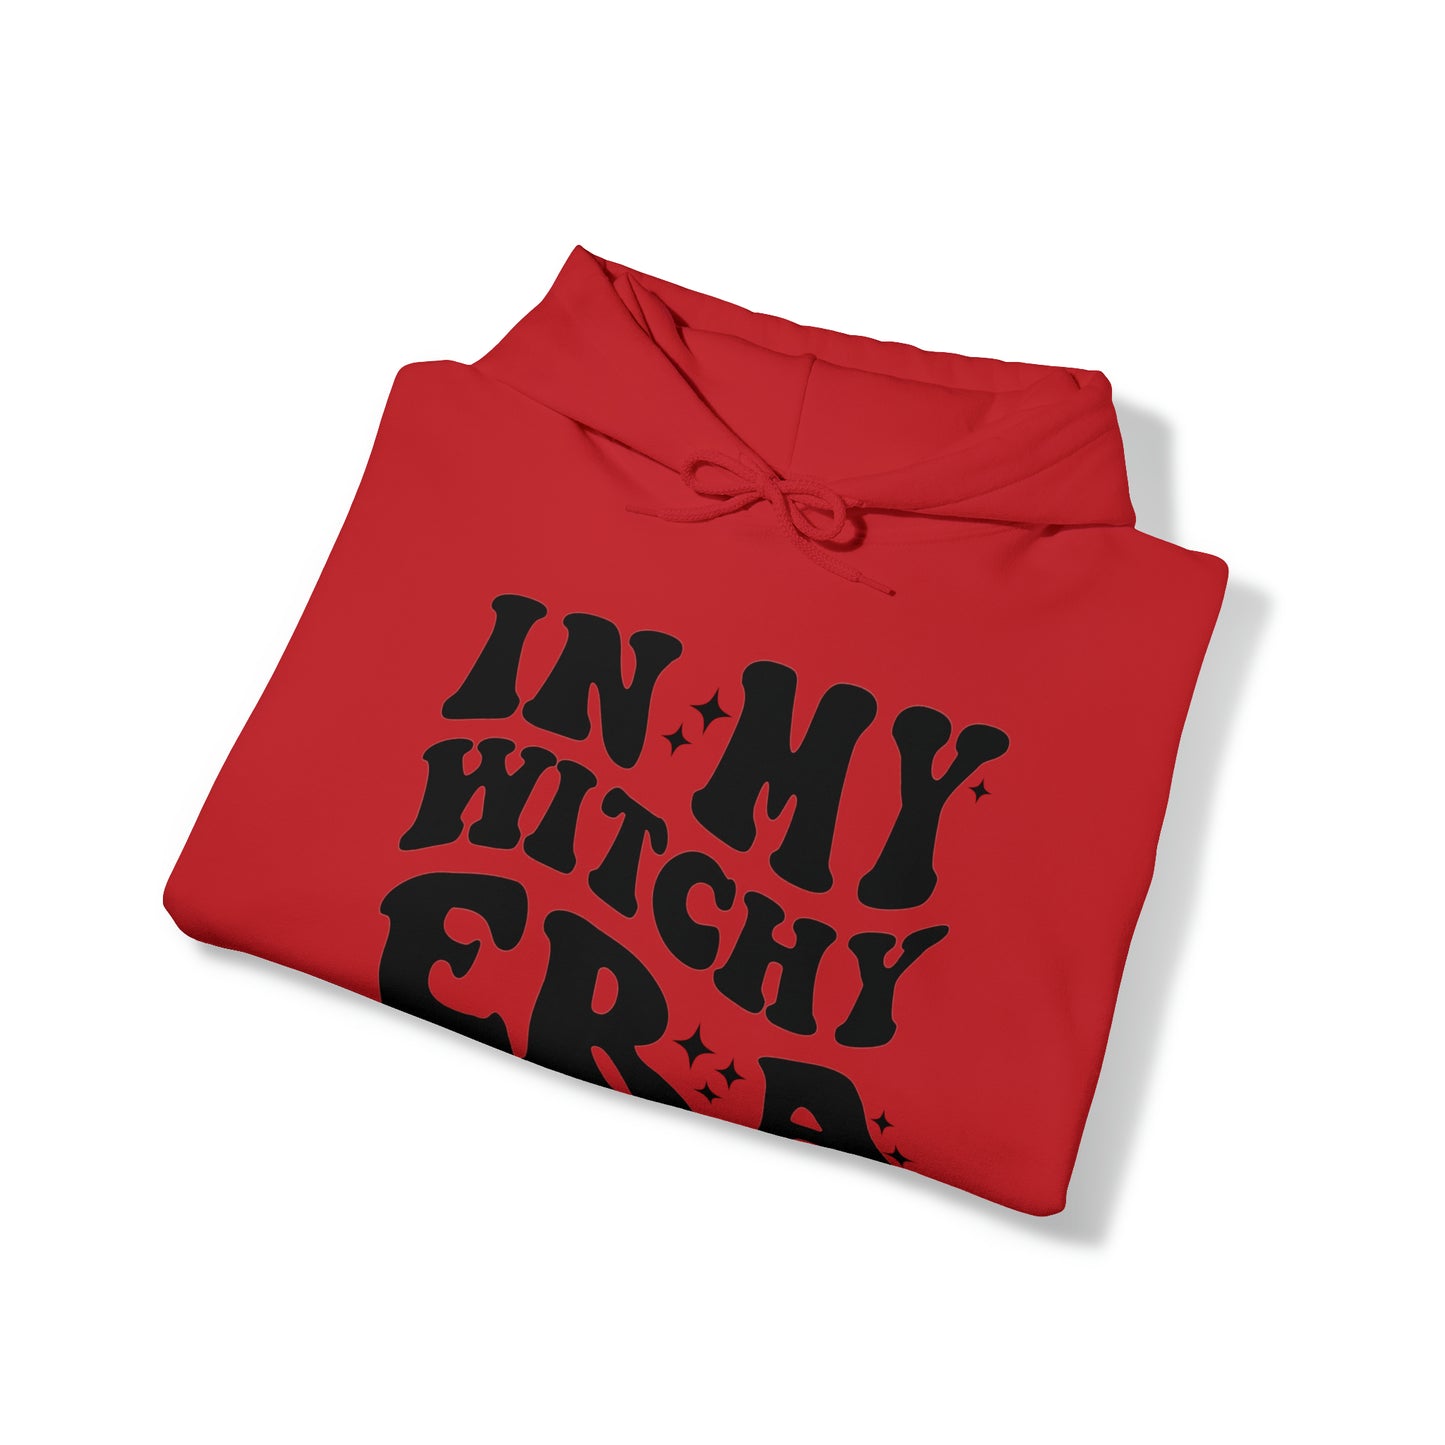 Unisex Heavy Blend™ Hooded Sweatshirt - Witchy Era